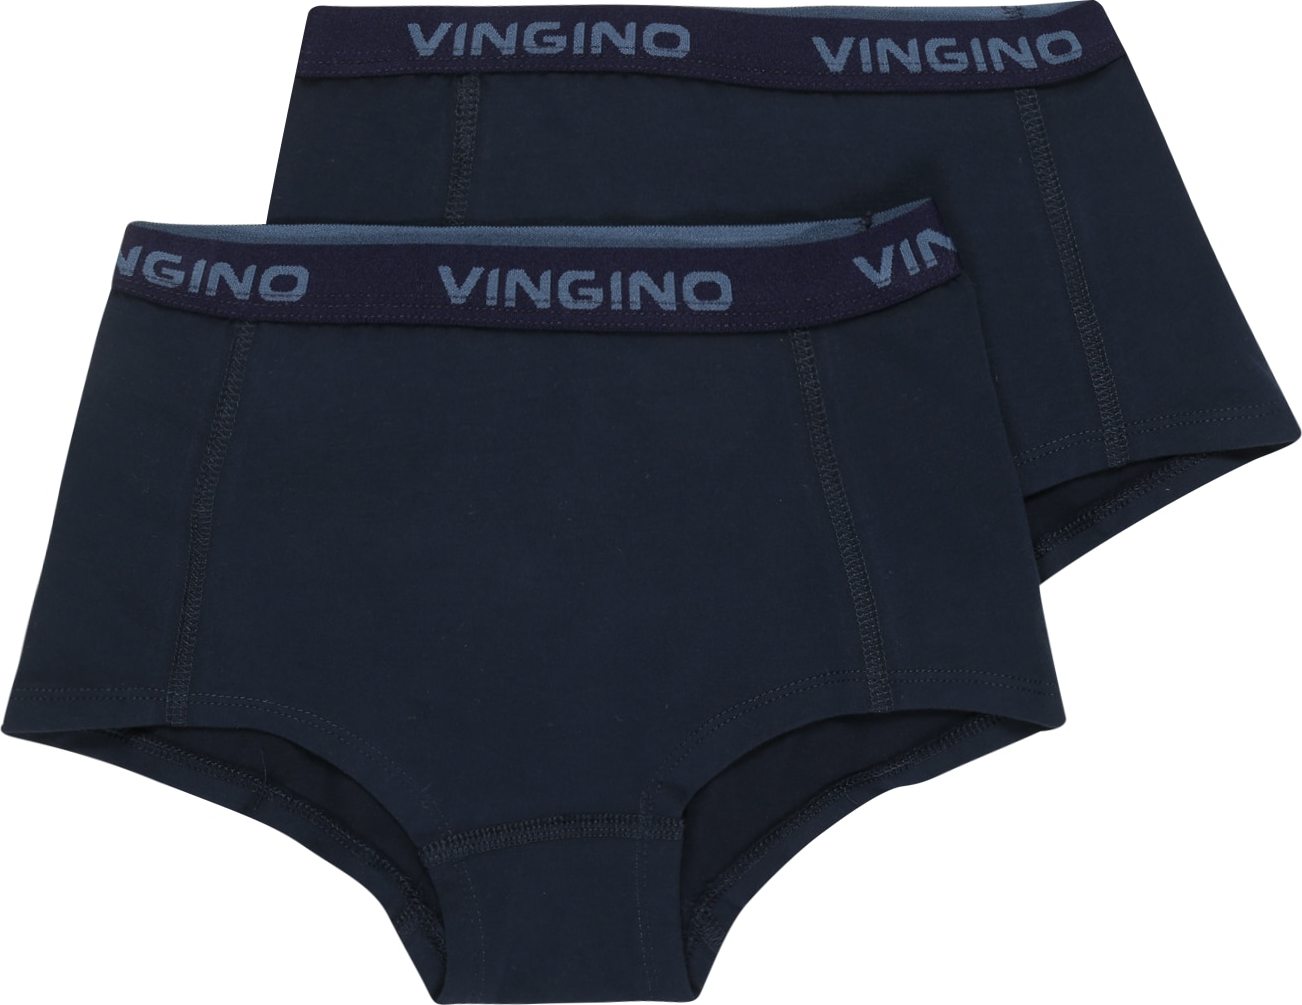 VINGINO Spodní prádlo tmavě modrá